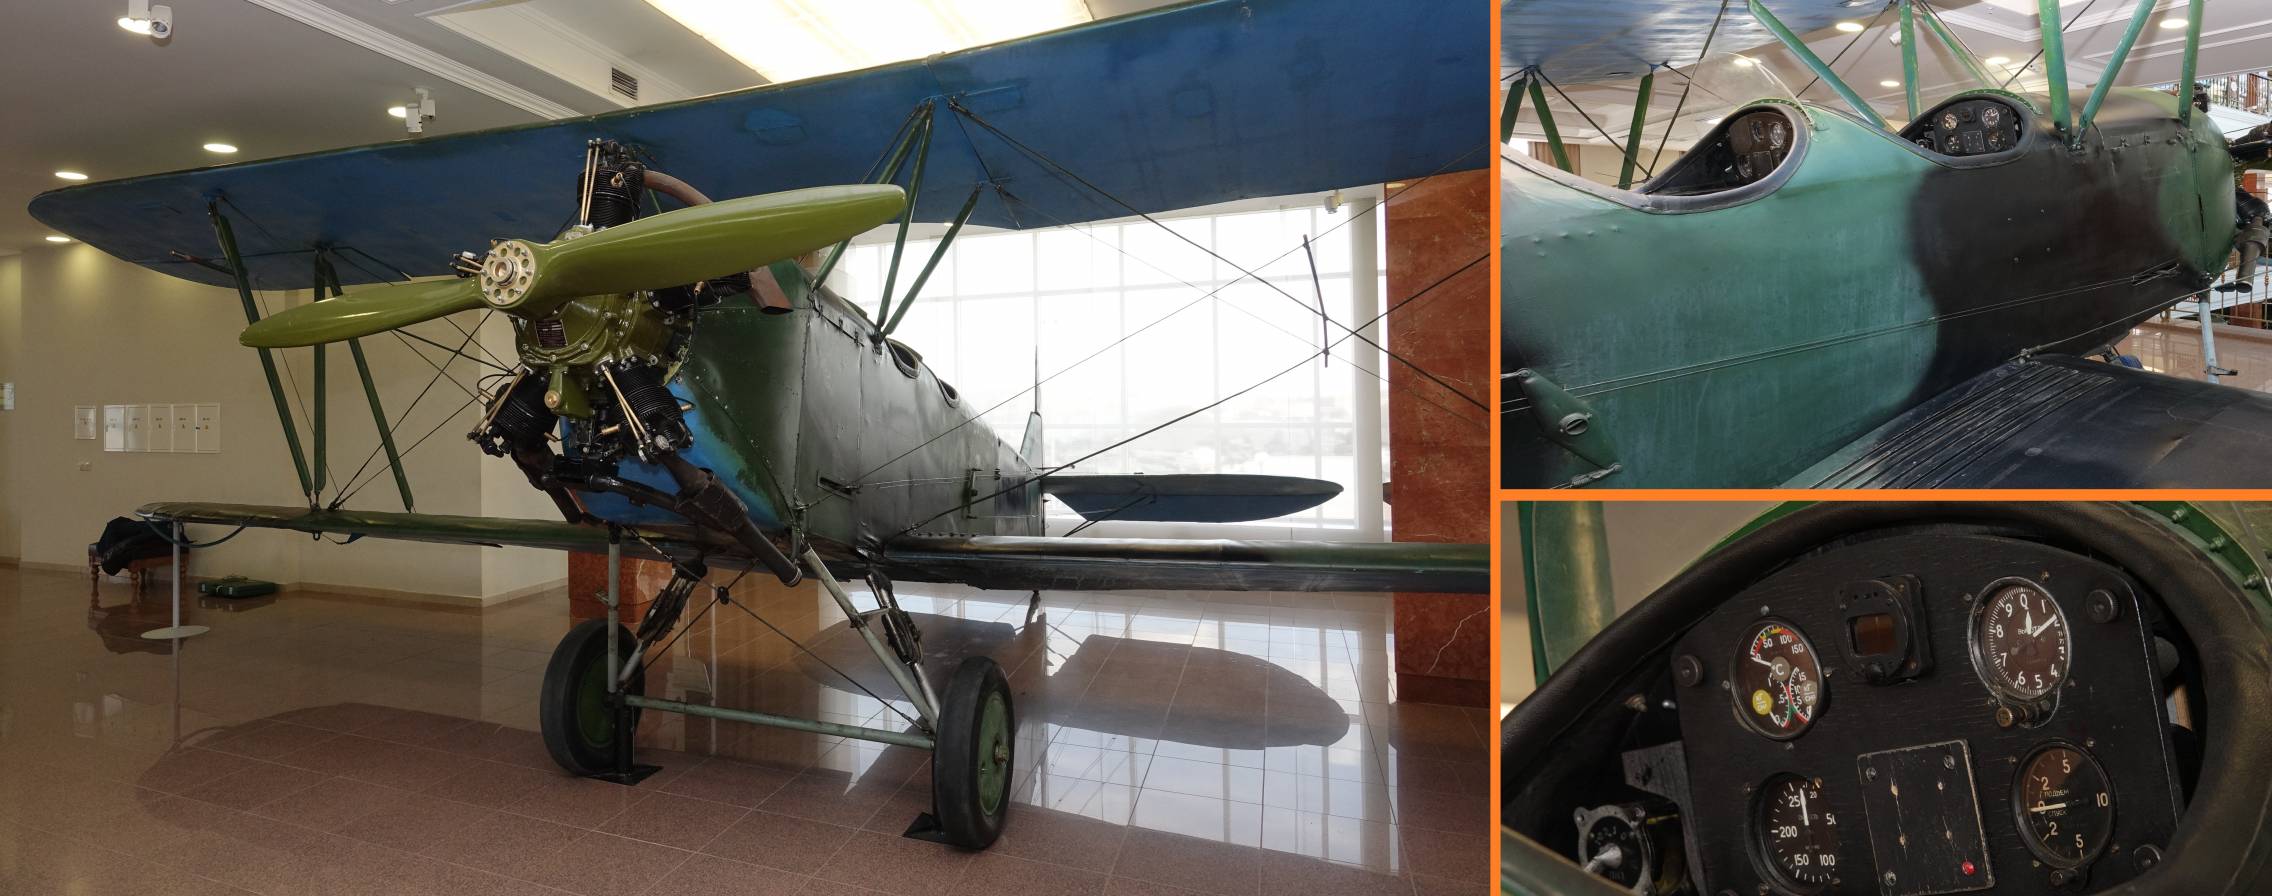 В музее военной техники УГМК появился «небесный тихоход»   